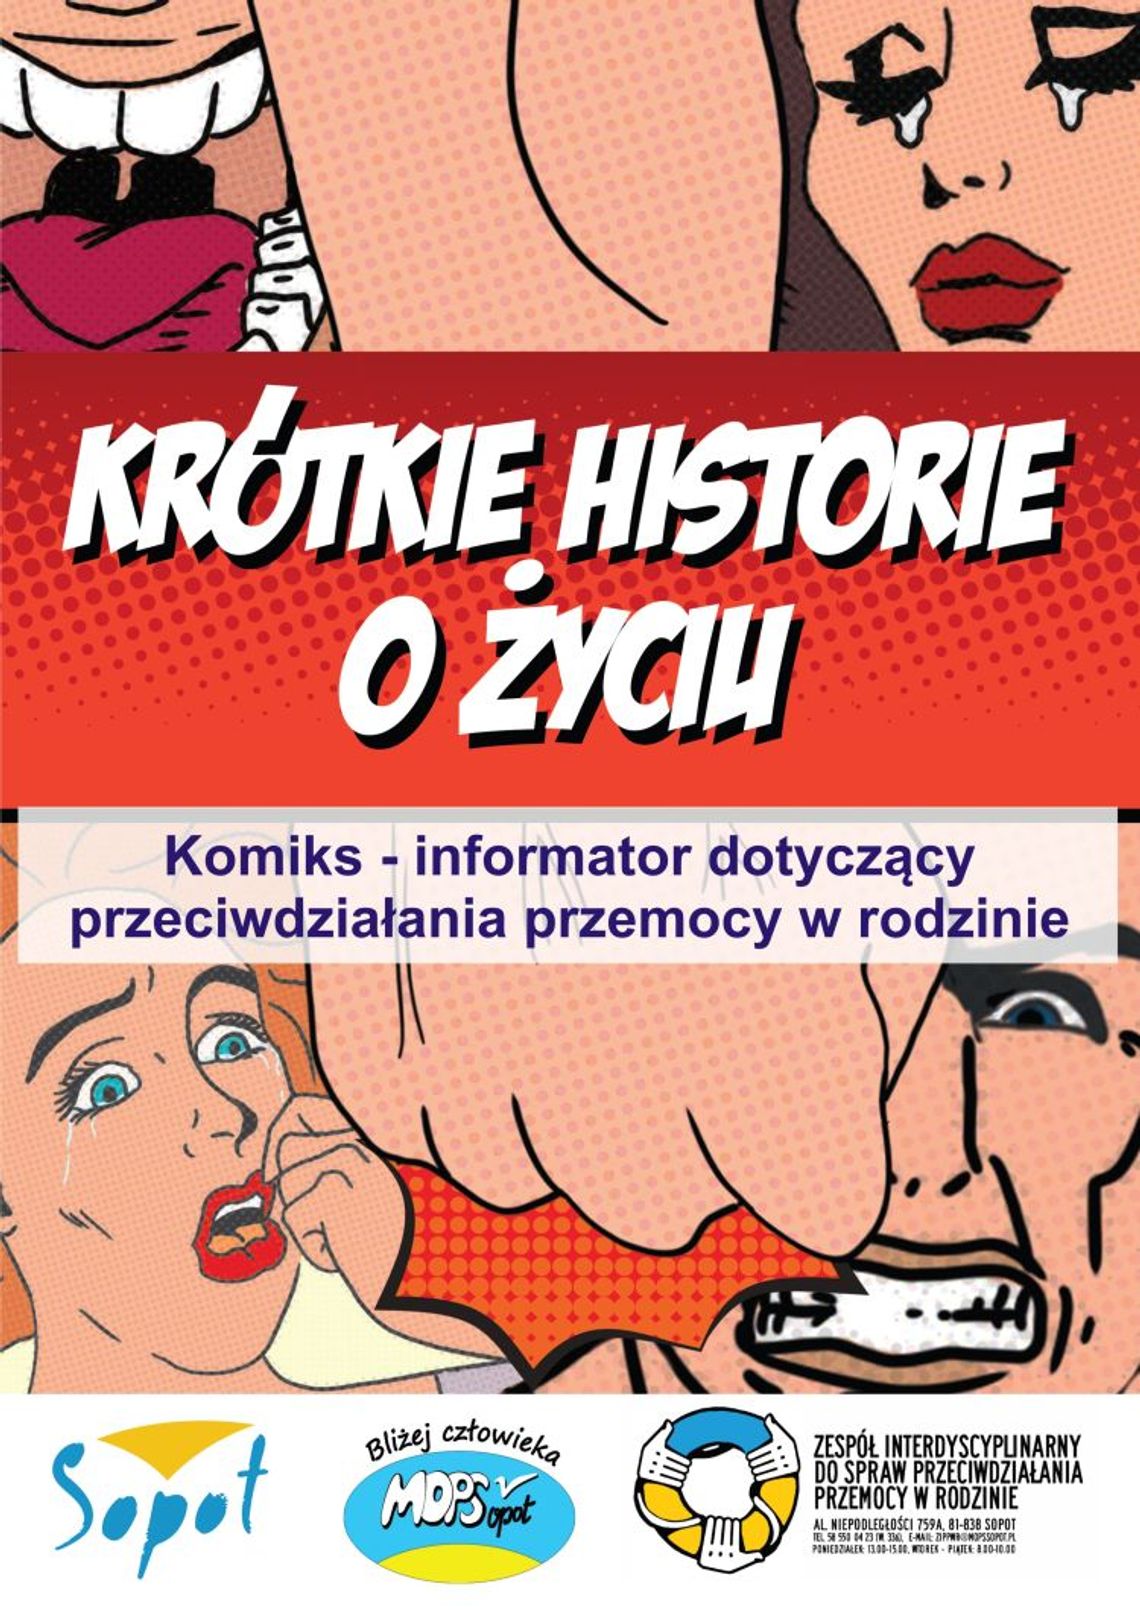 W Sopocie powstał komiks – informator dotyczący przeciwdziałania przemocy w rodzinie